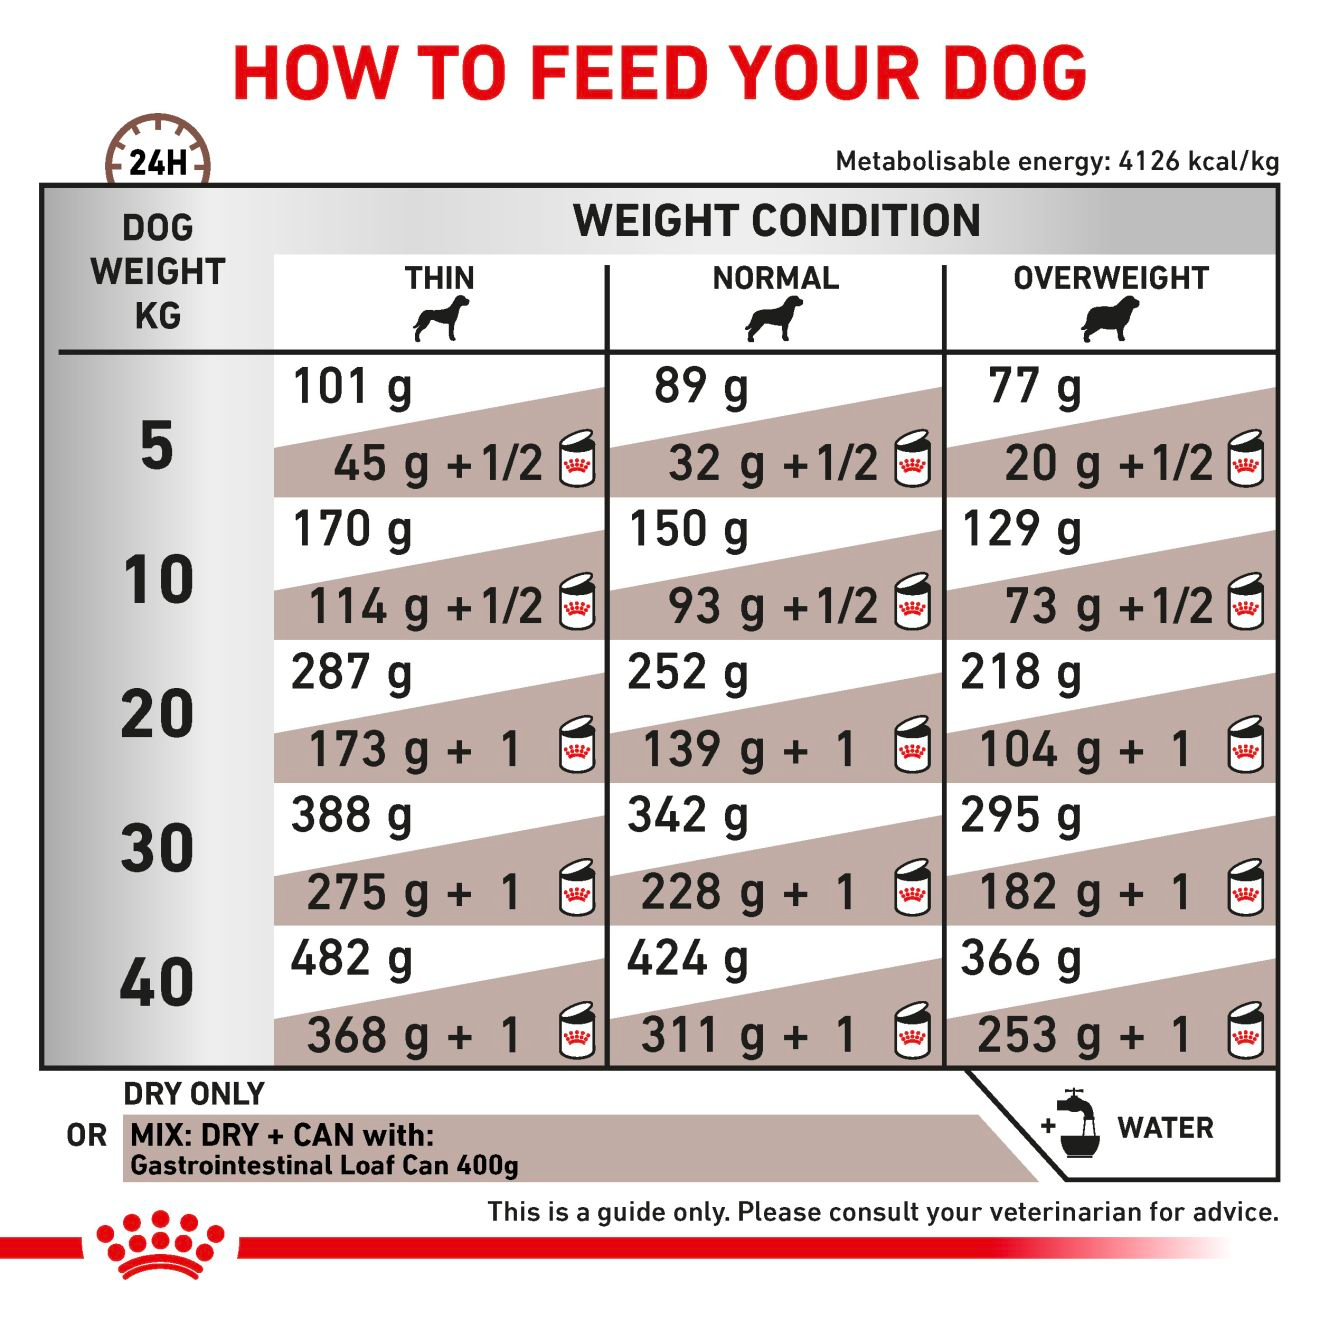 Royal Canin Veterinary Diets Gastrointestinal koiran kuivaruoka 7,5 kg